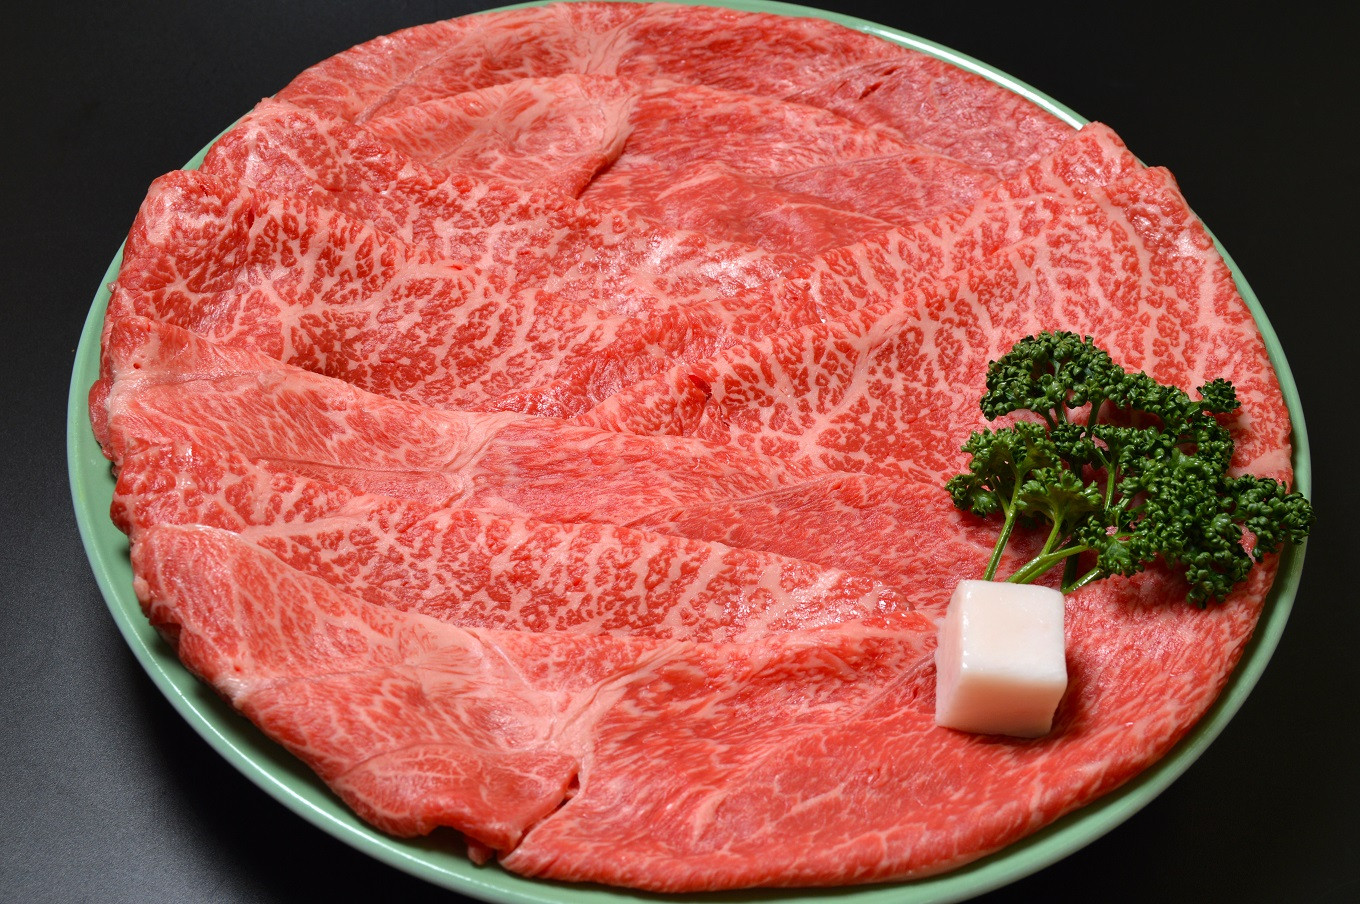 京都肉の肩肉とモモ肉をブレンドしたすき焼き用 600g